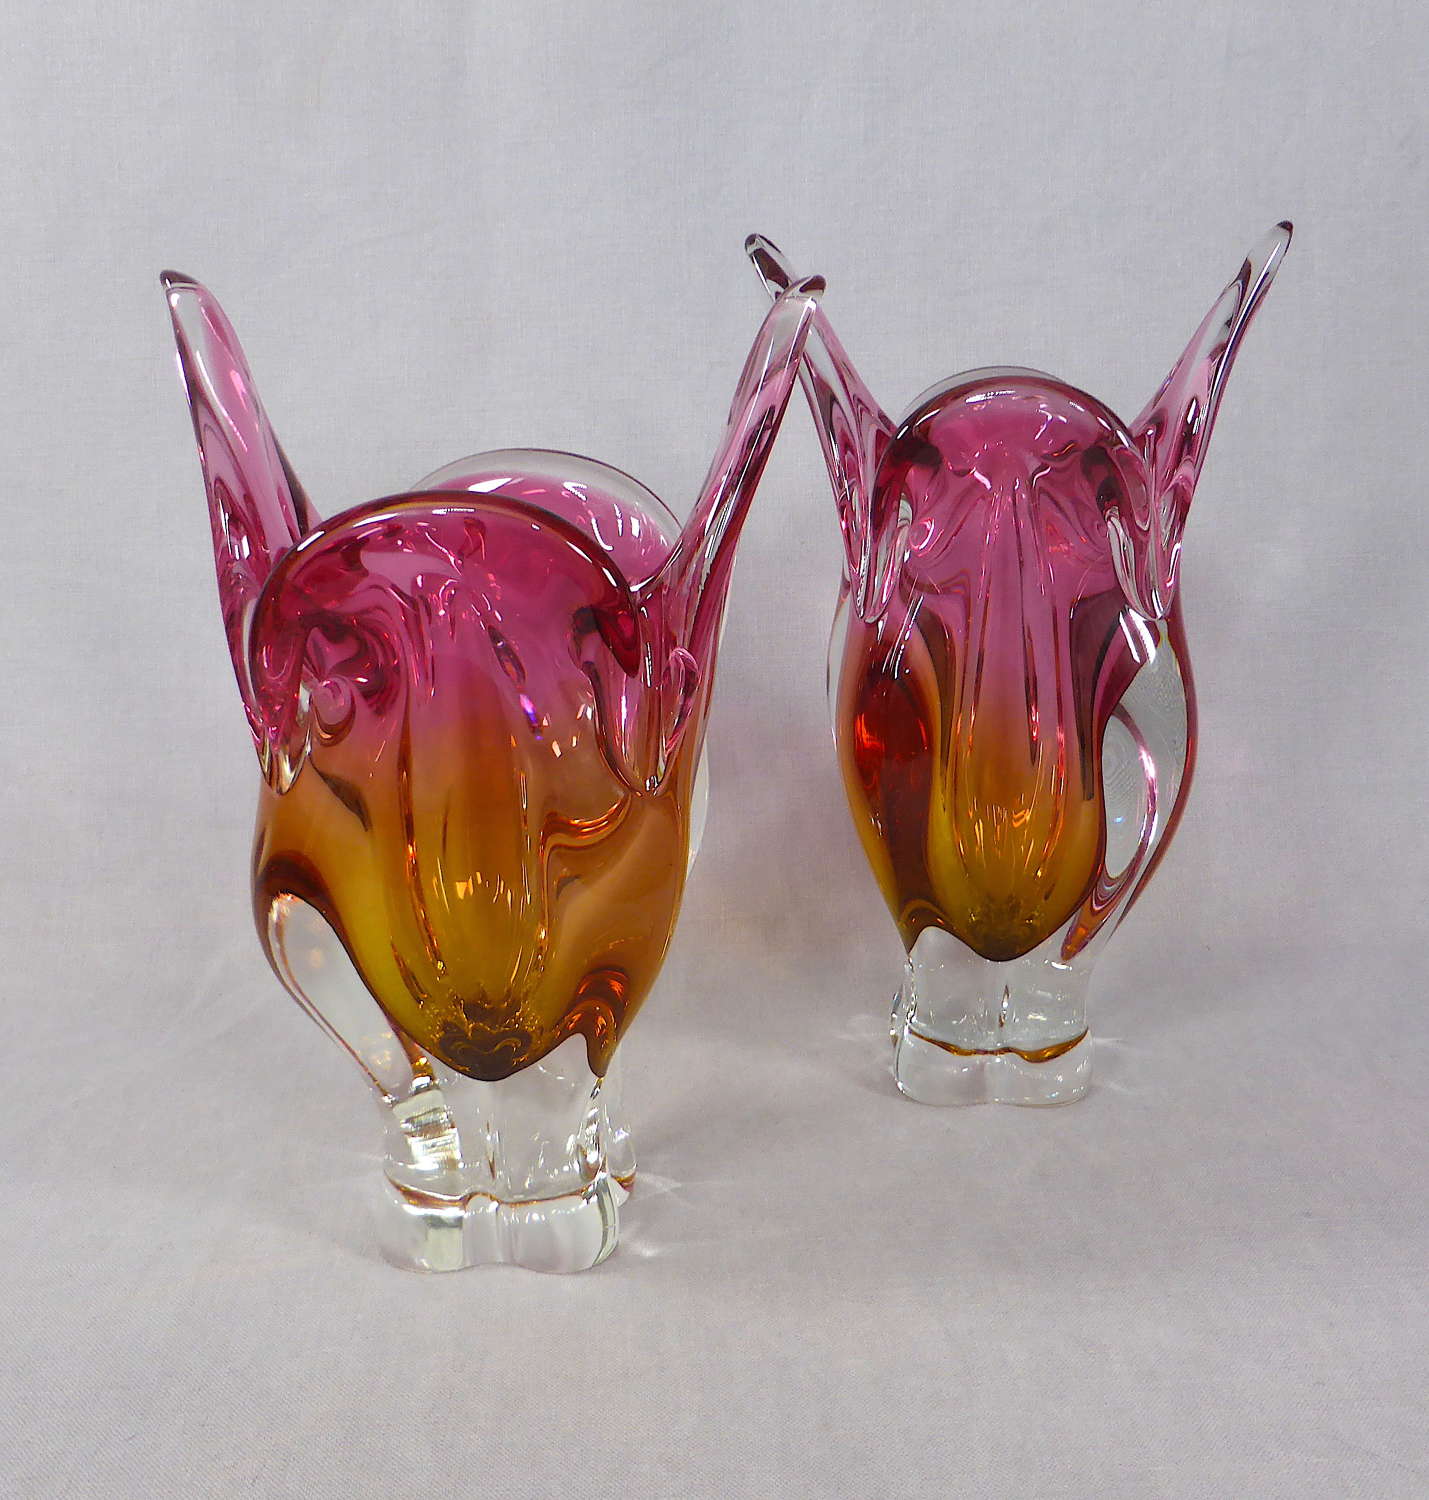 Czech Chřibská Cat's Head glass vase by Josef Hospodska